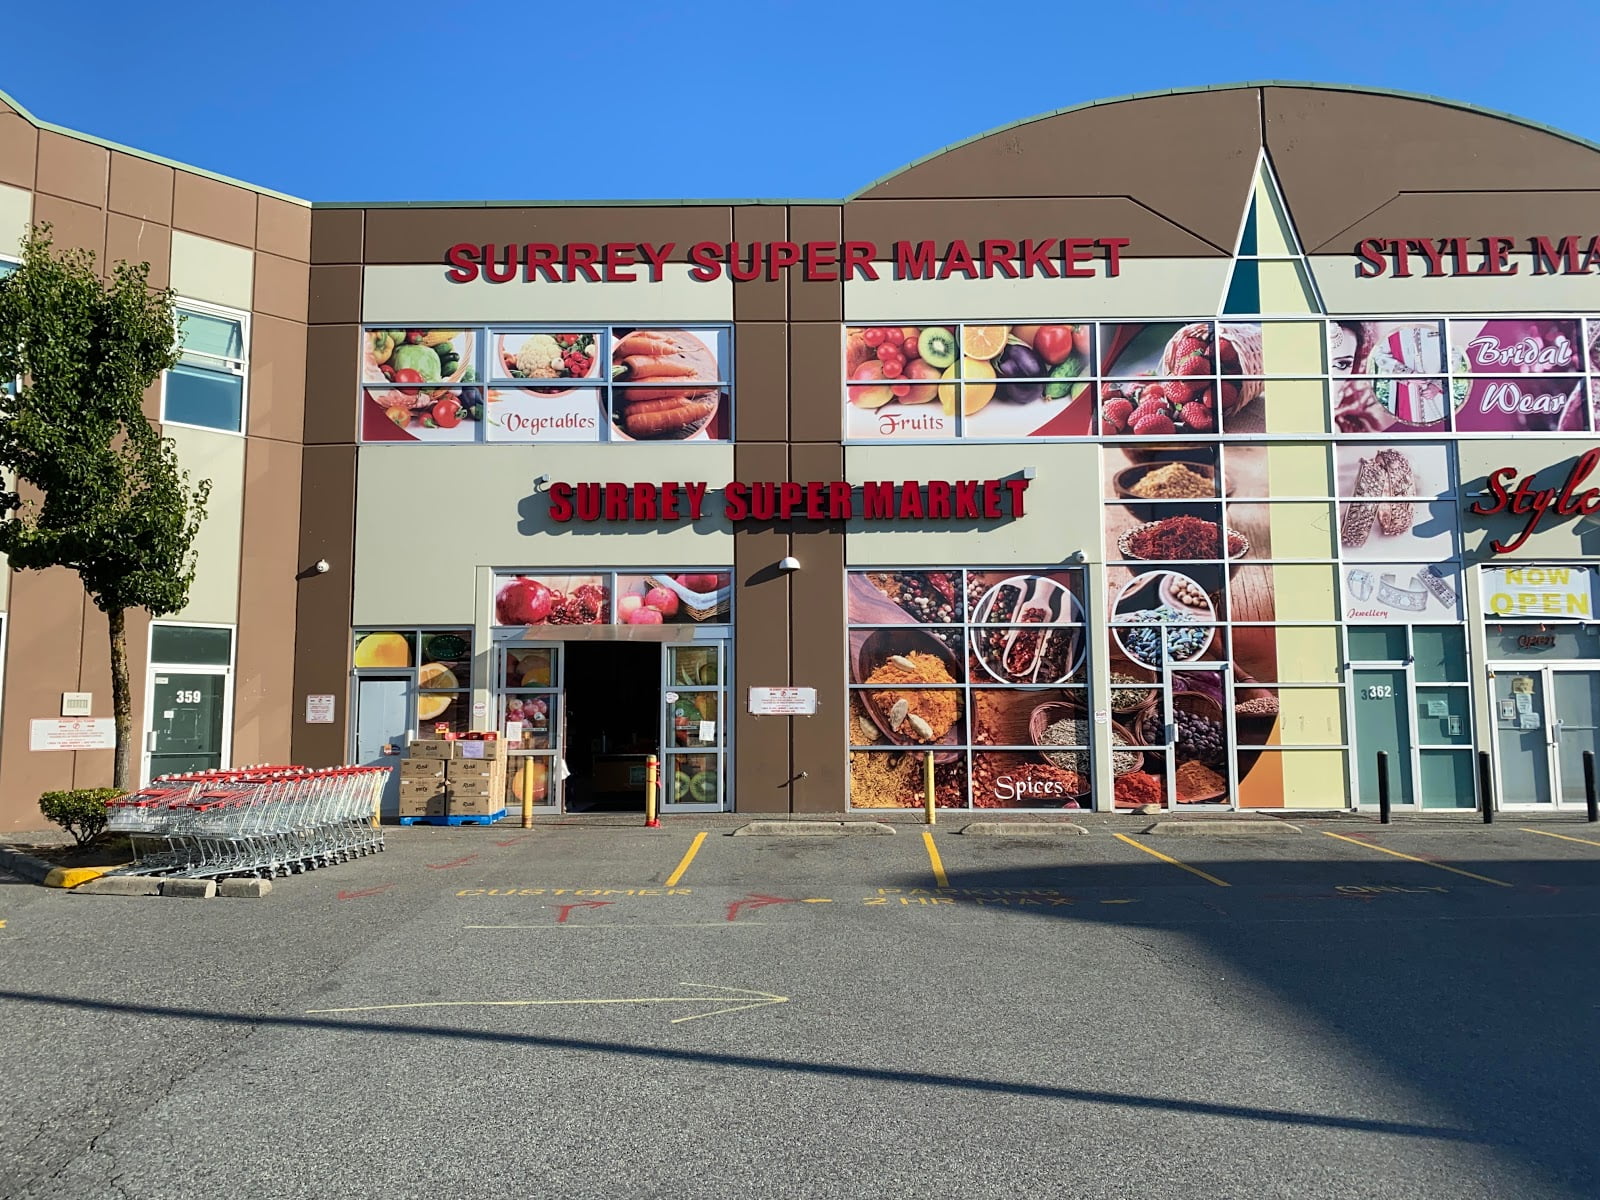 Surrey Super market